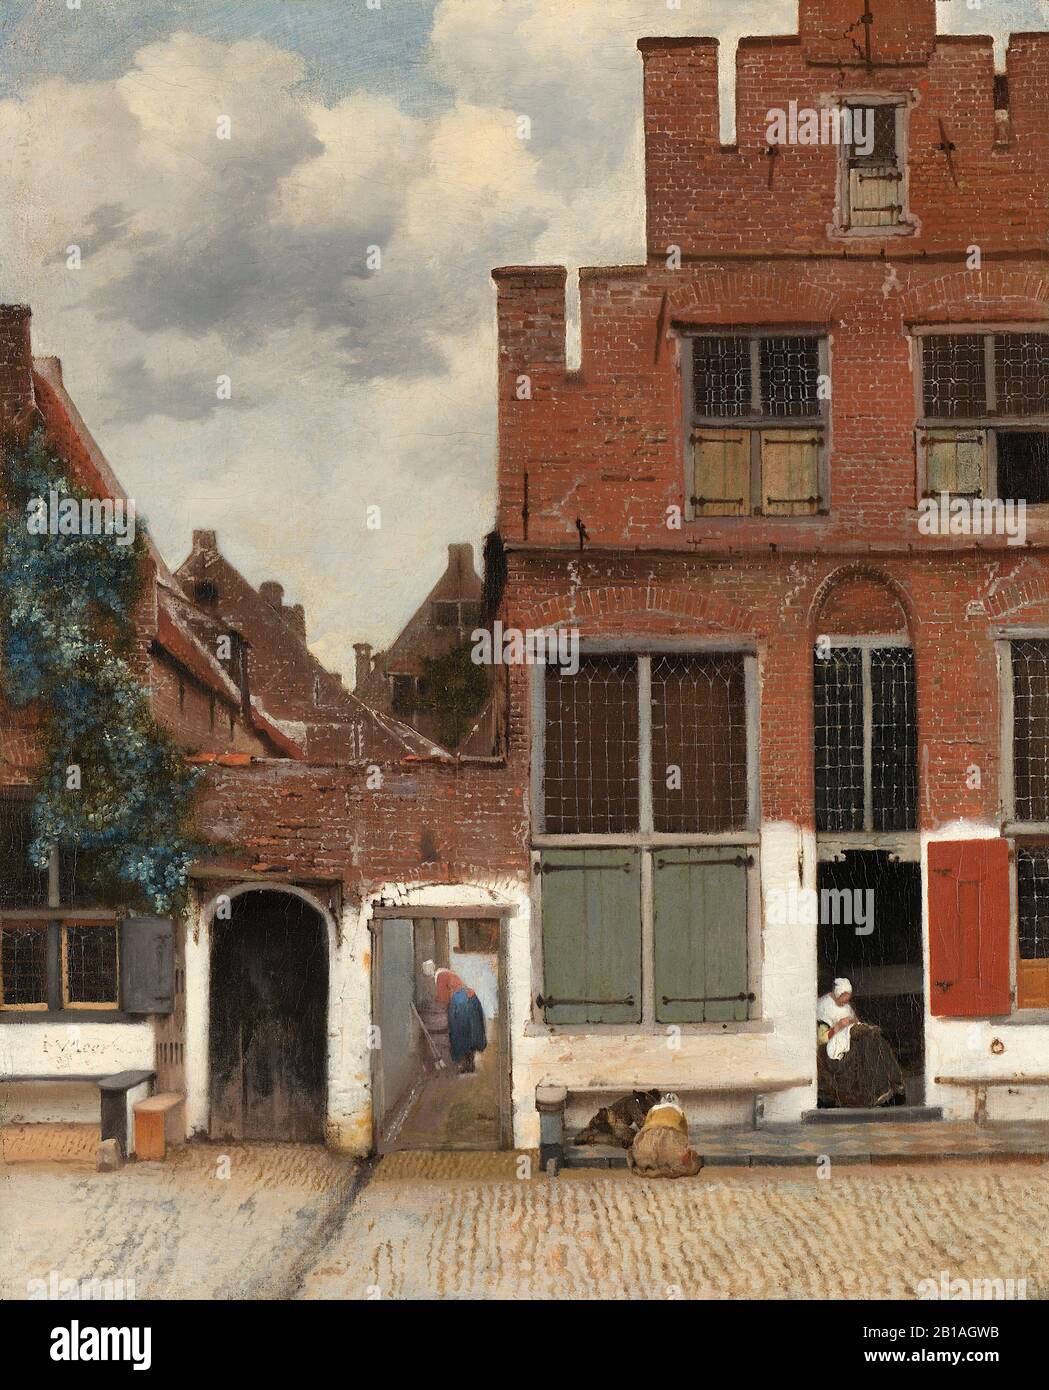 Blick auf Die Häuser in Delft (Kleine Straße) (ca. 1658) von Johannes Vermeer - holländisches Gemälde der Zeit des Barock aus dem 17. Jahrhundert - Sehr hochauflösendes Bild Stockfoto